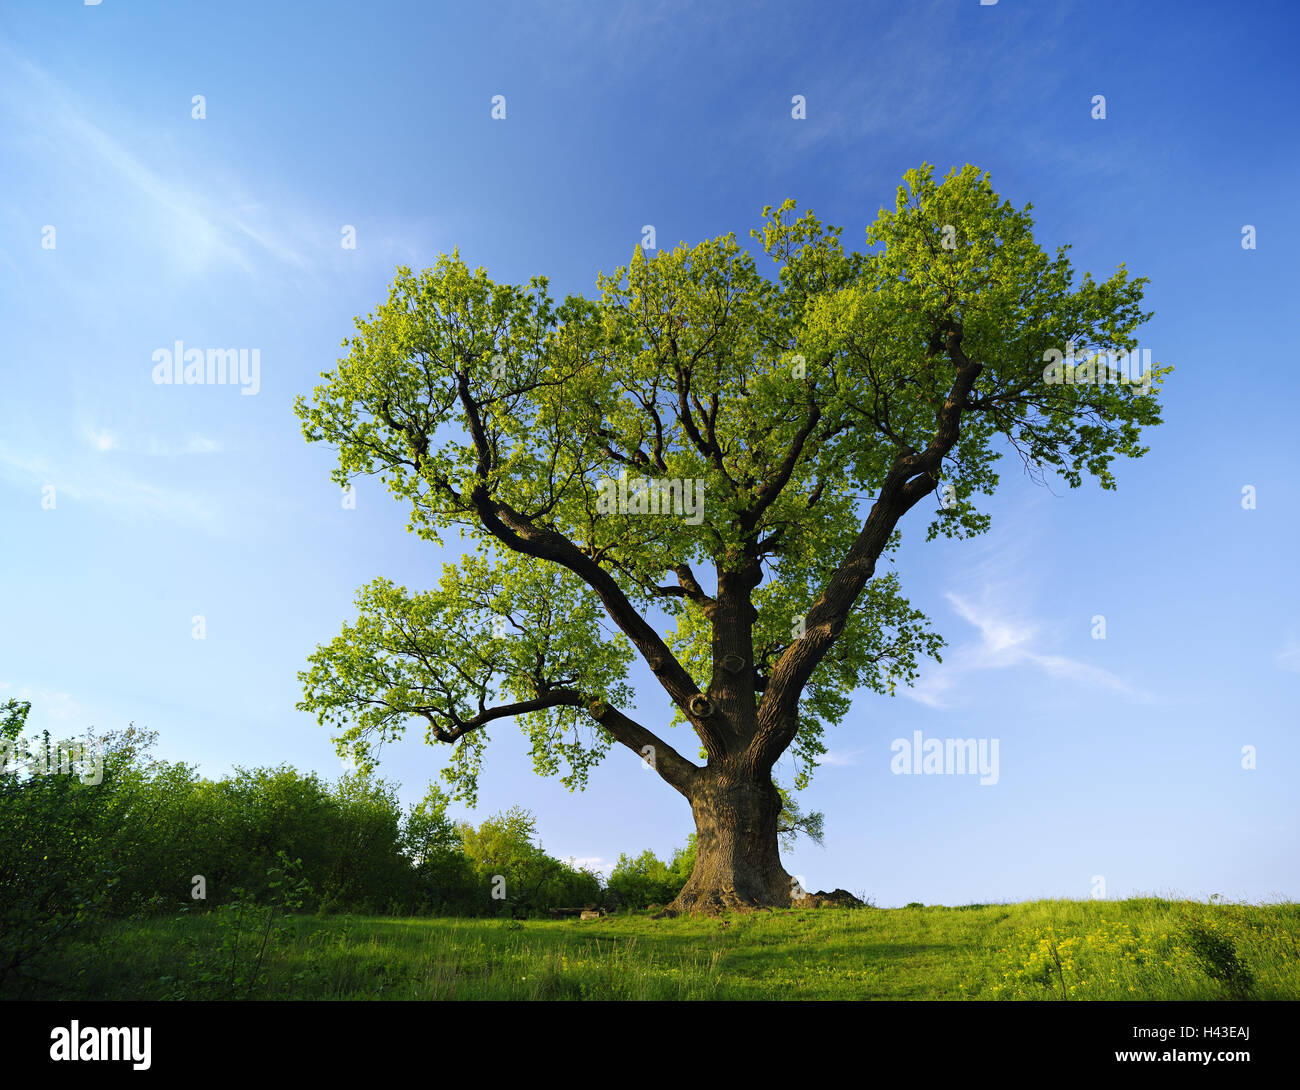 Germany, Thuringia, solitary tree, oak, Stock Photo